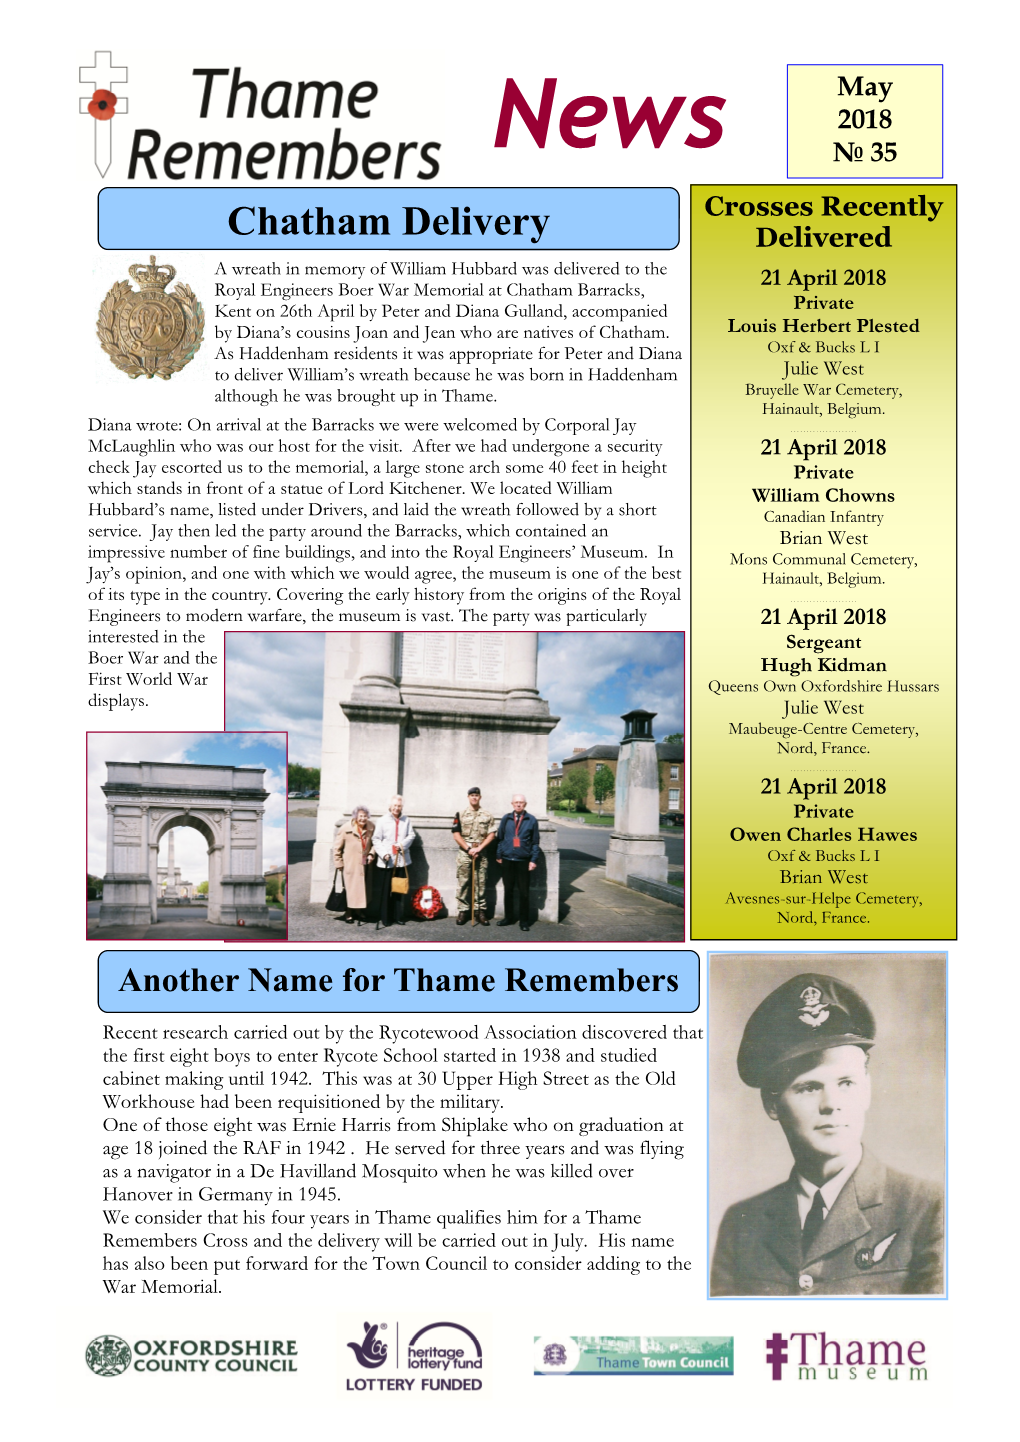 Chatham Delivery Delivered